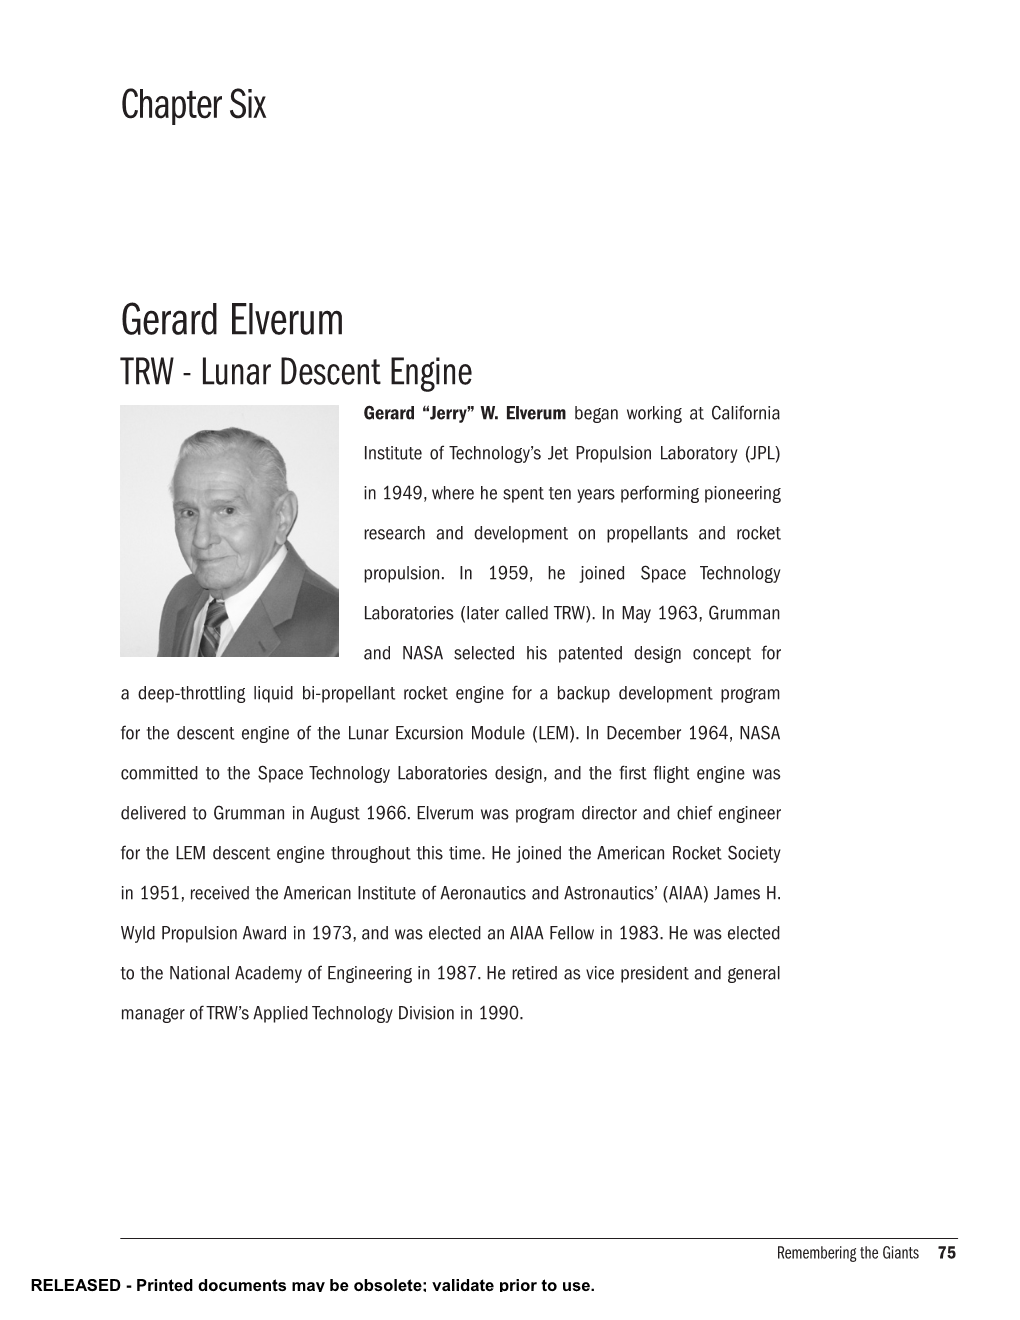 Gerard Elverum TRW - Lunar Descent Engine Gerard “Jerry” W